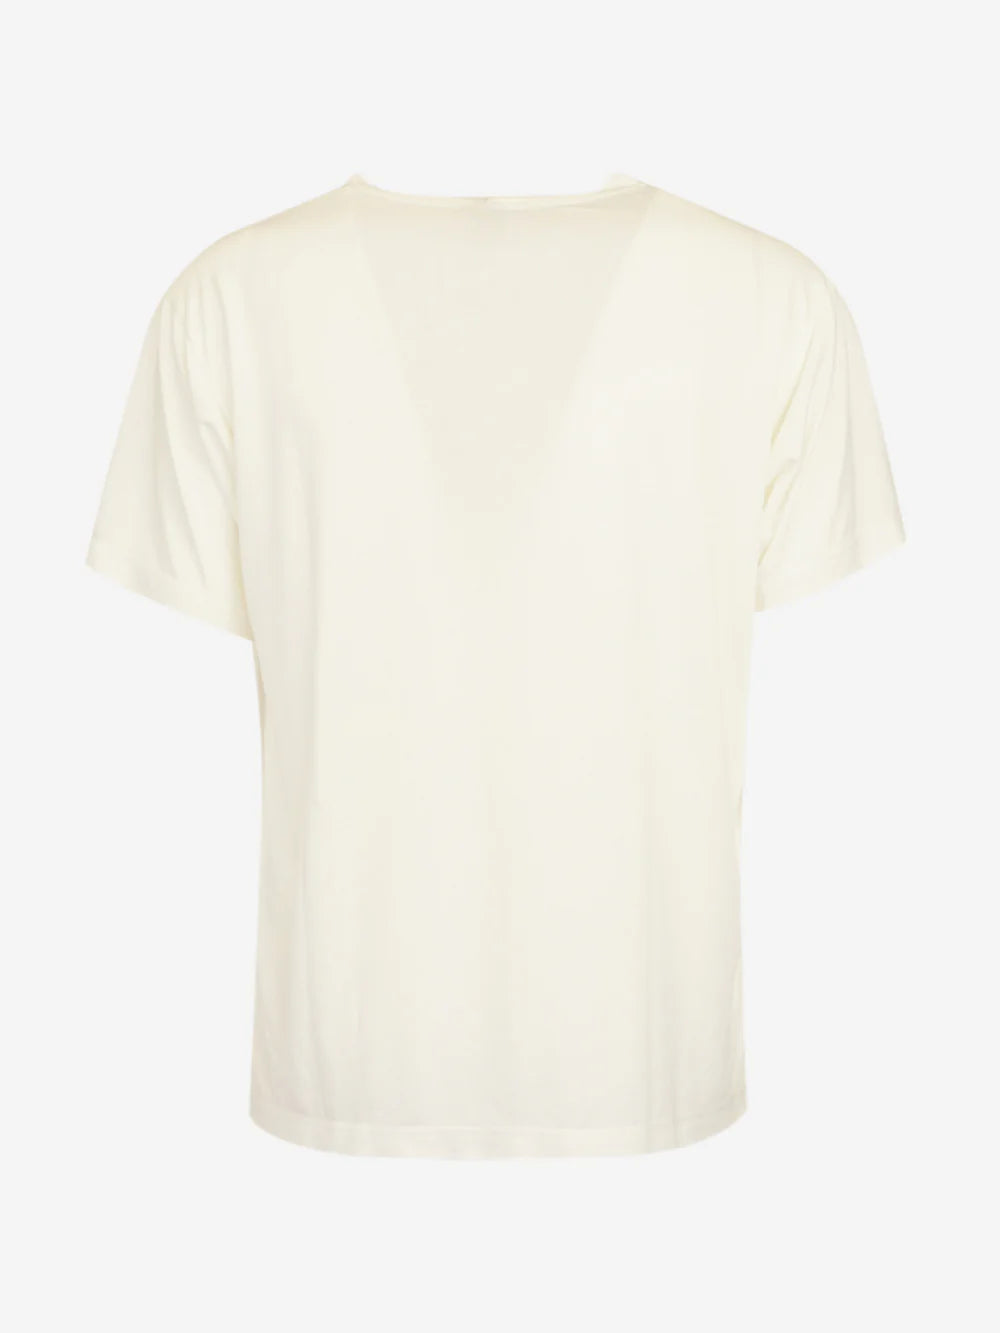 Marsem Boxy Tshirt in White Viscose 